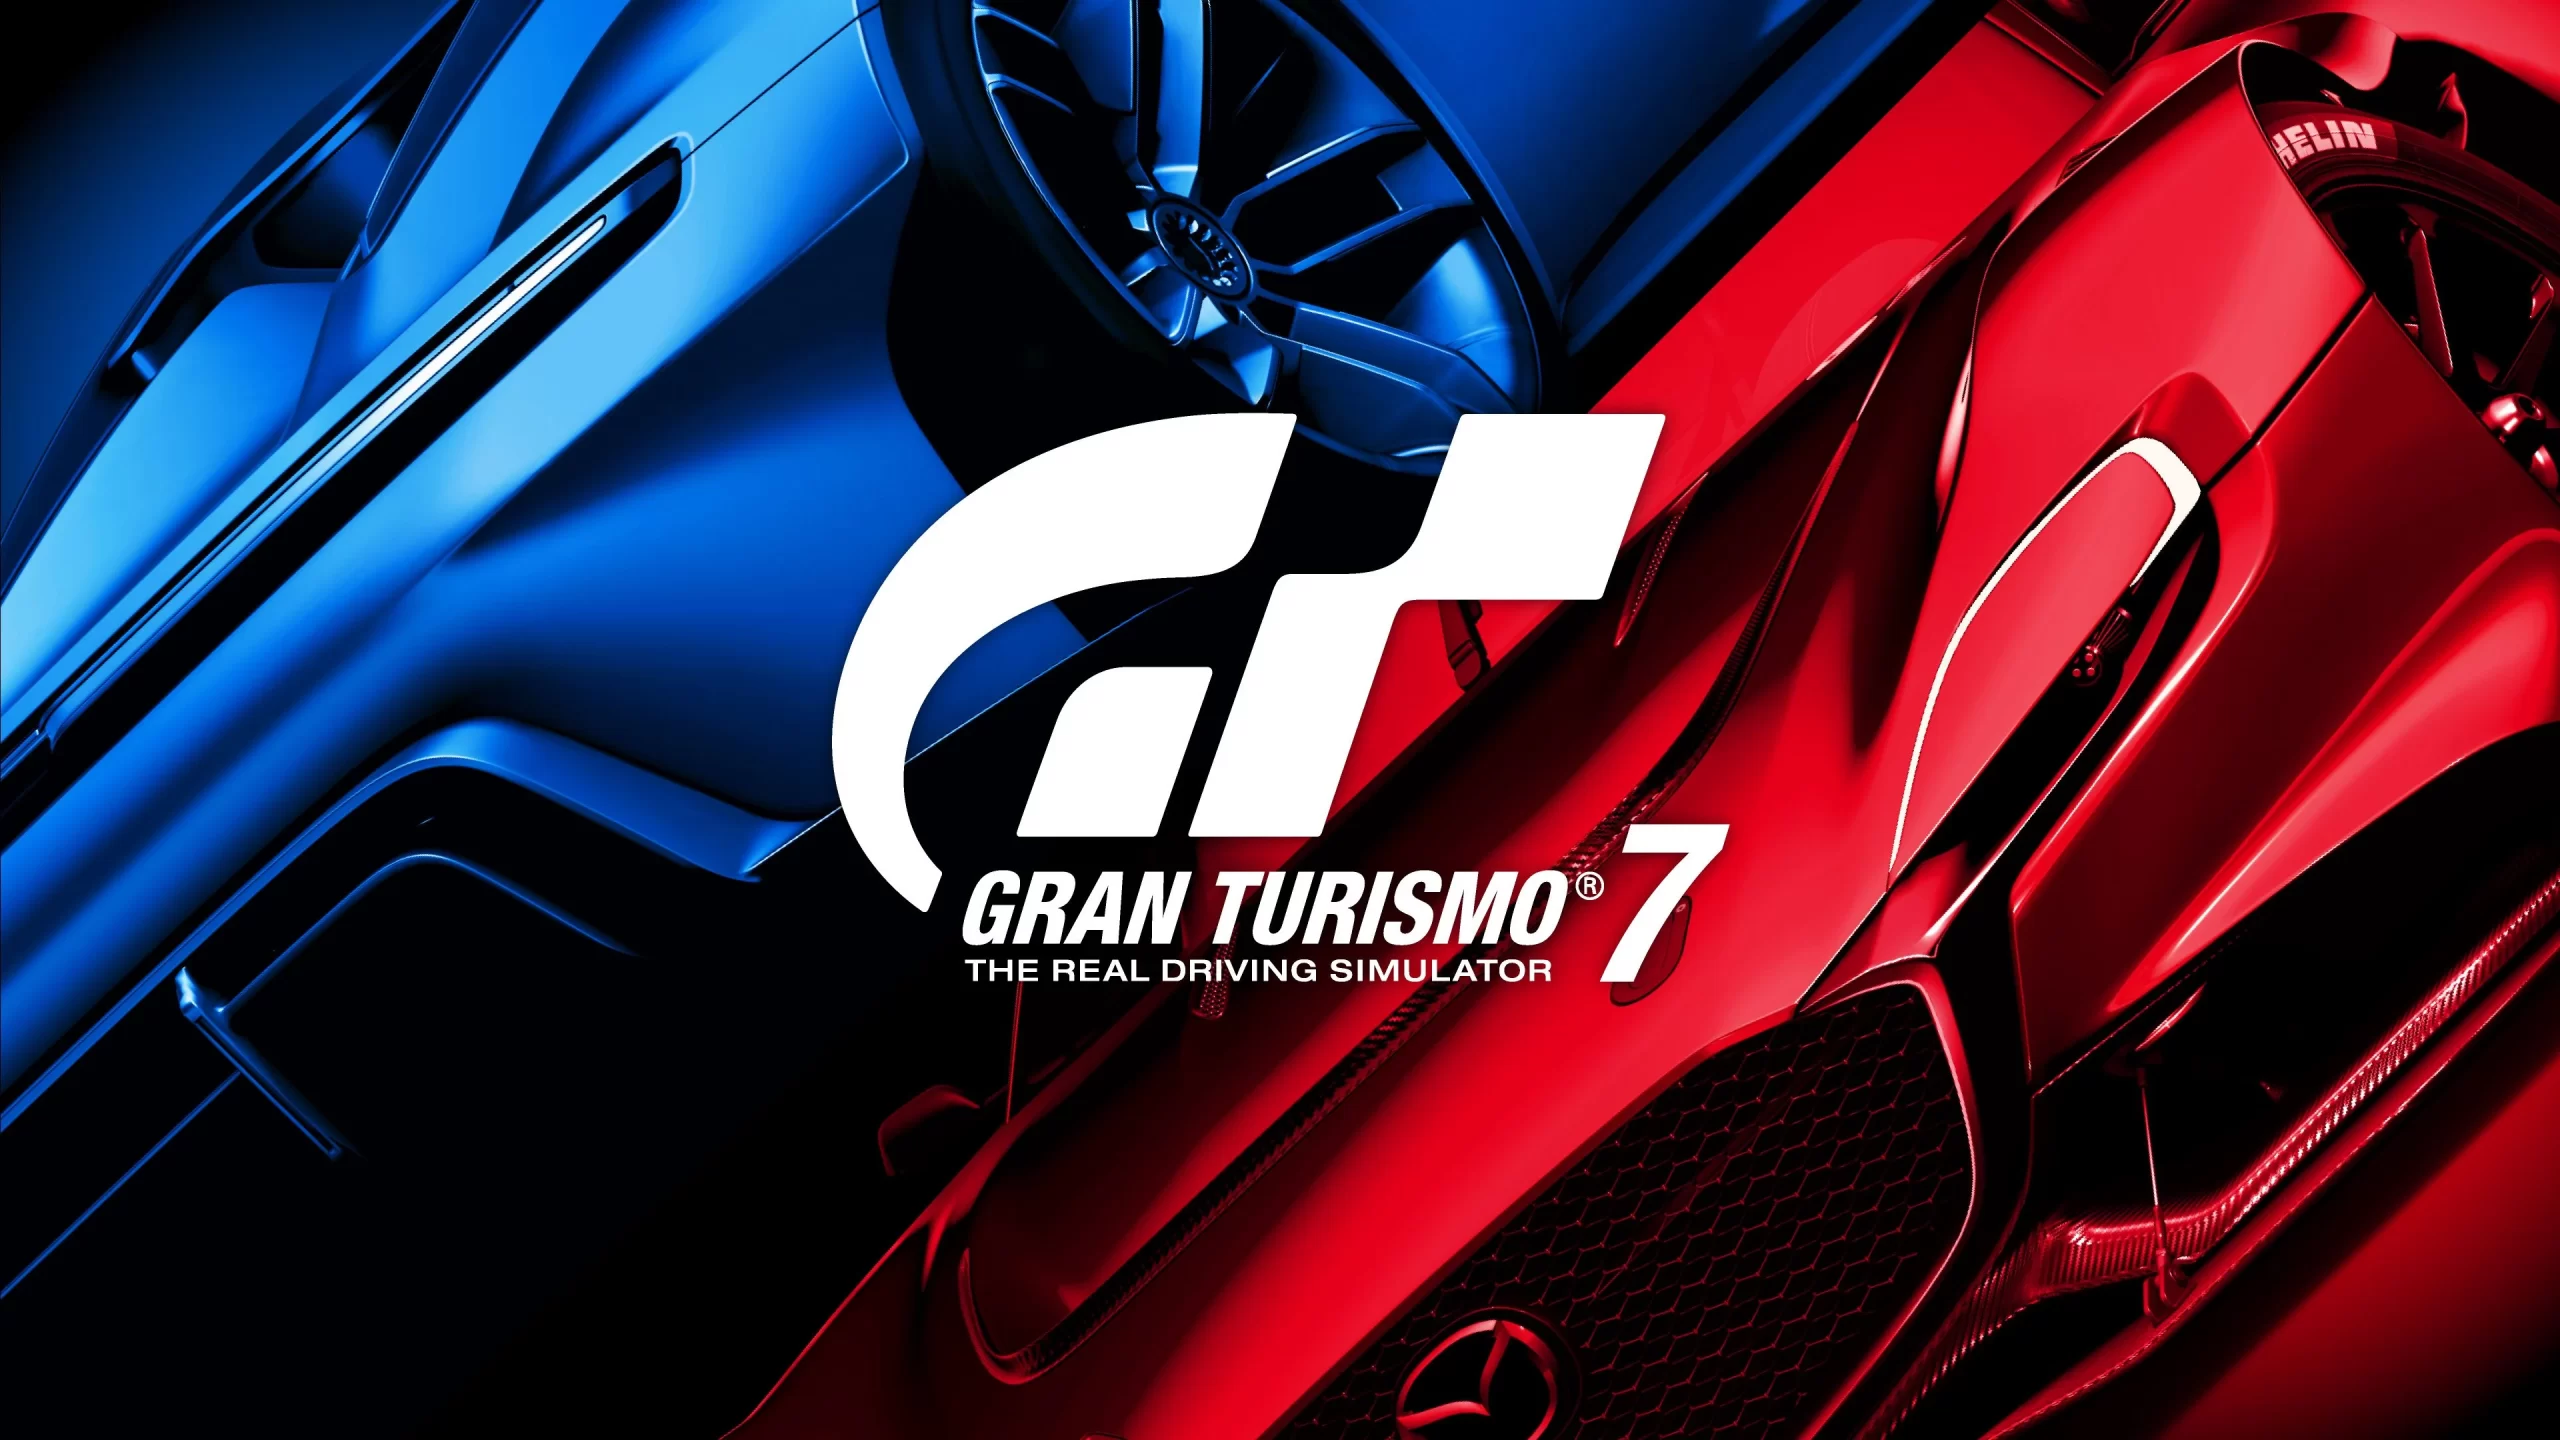 نمرات بازی Gran Turismo 7